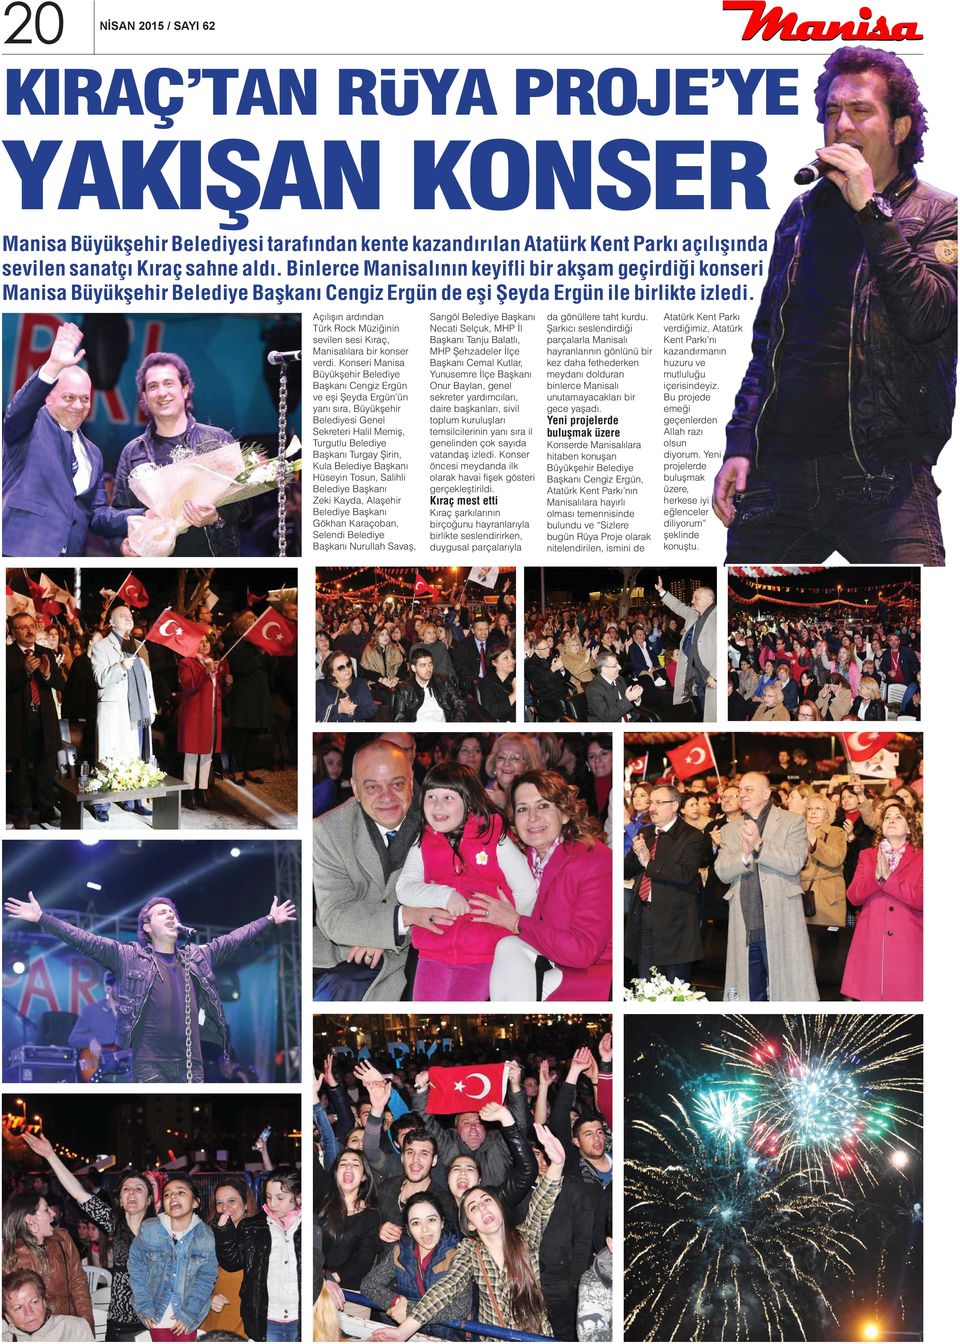 Açılışın ardından Türk Rock Müziğinin sevilen sesi Kıraç, Manisalılara bir konser verdi.